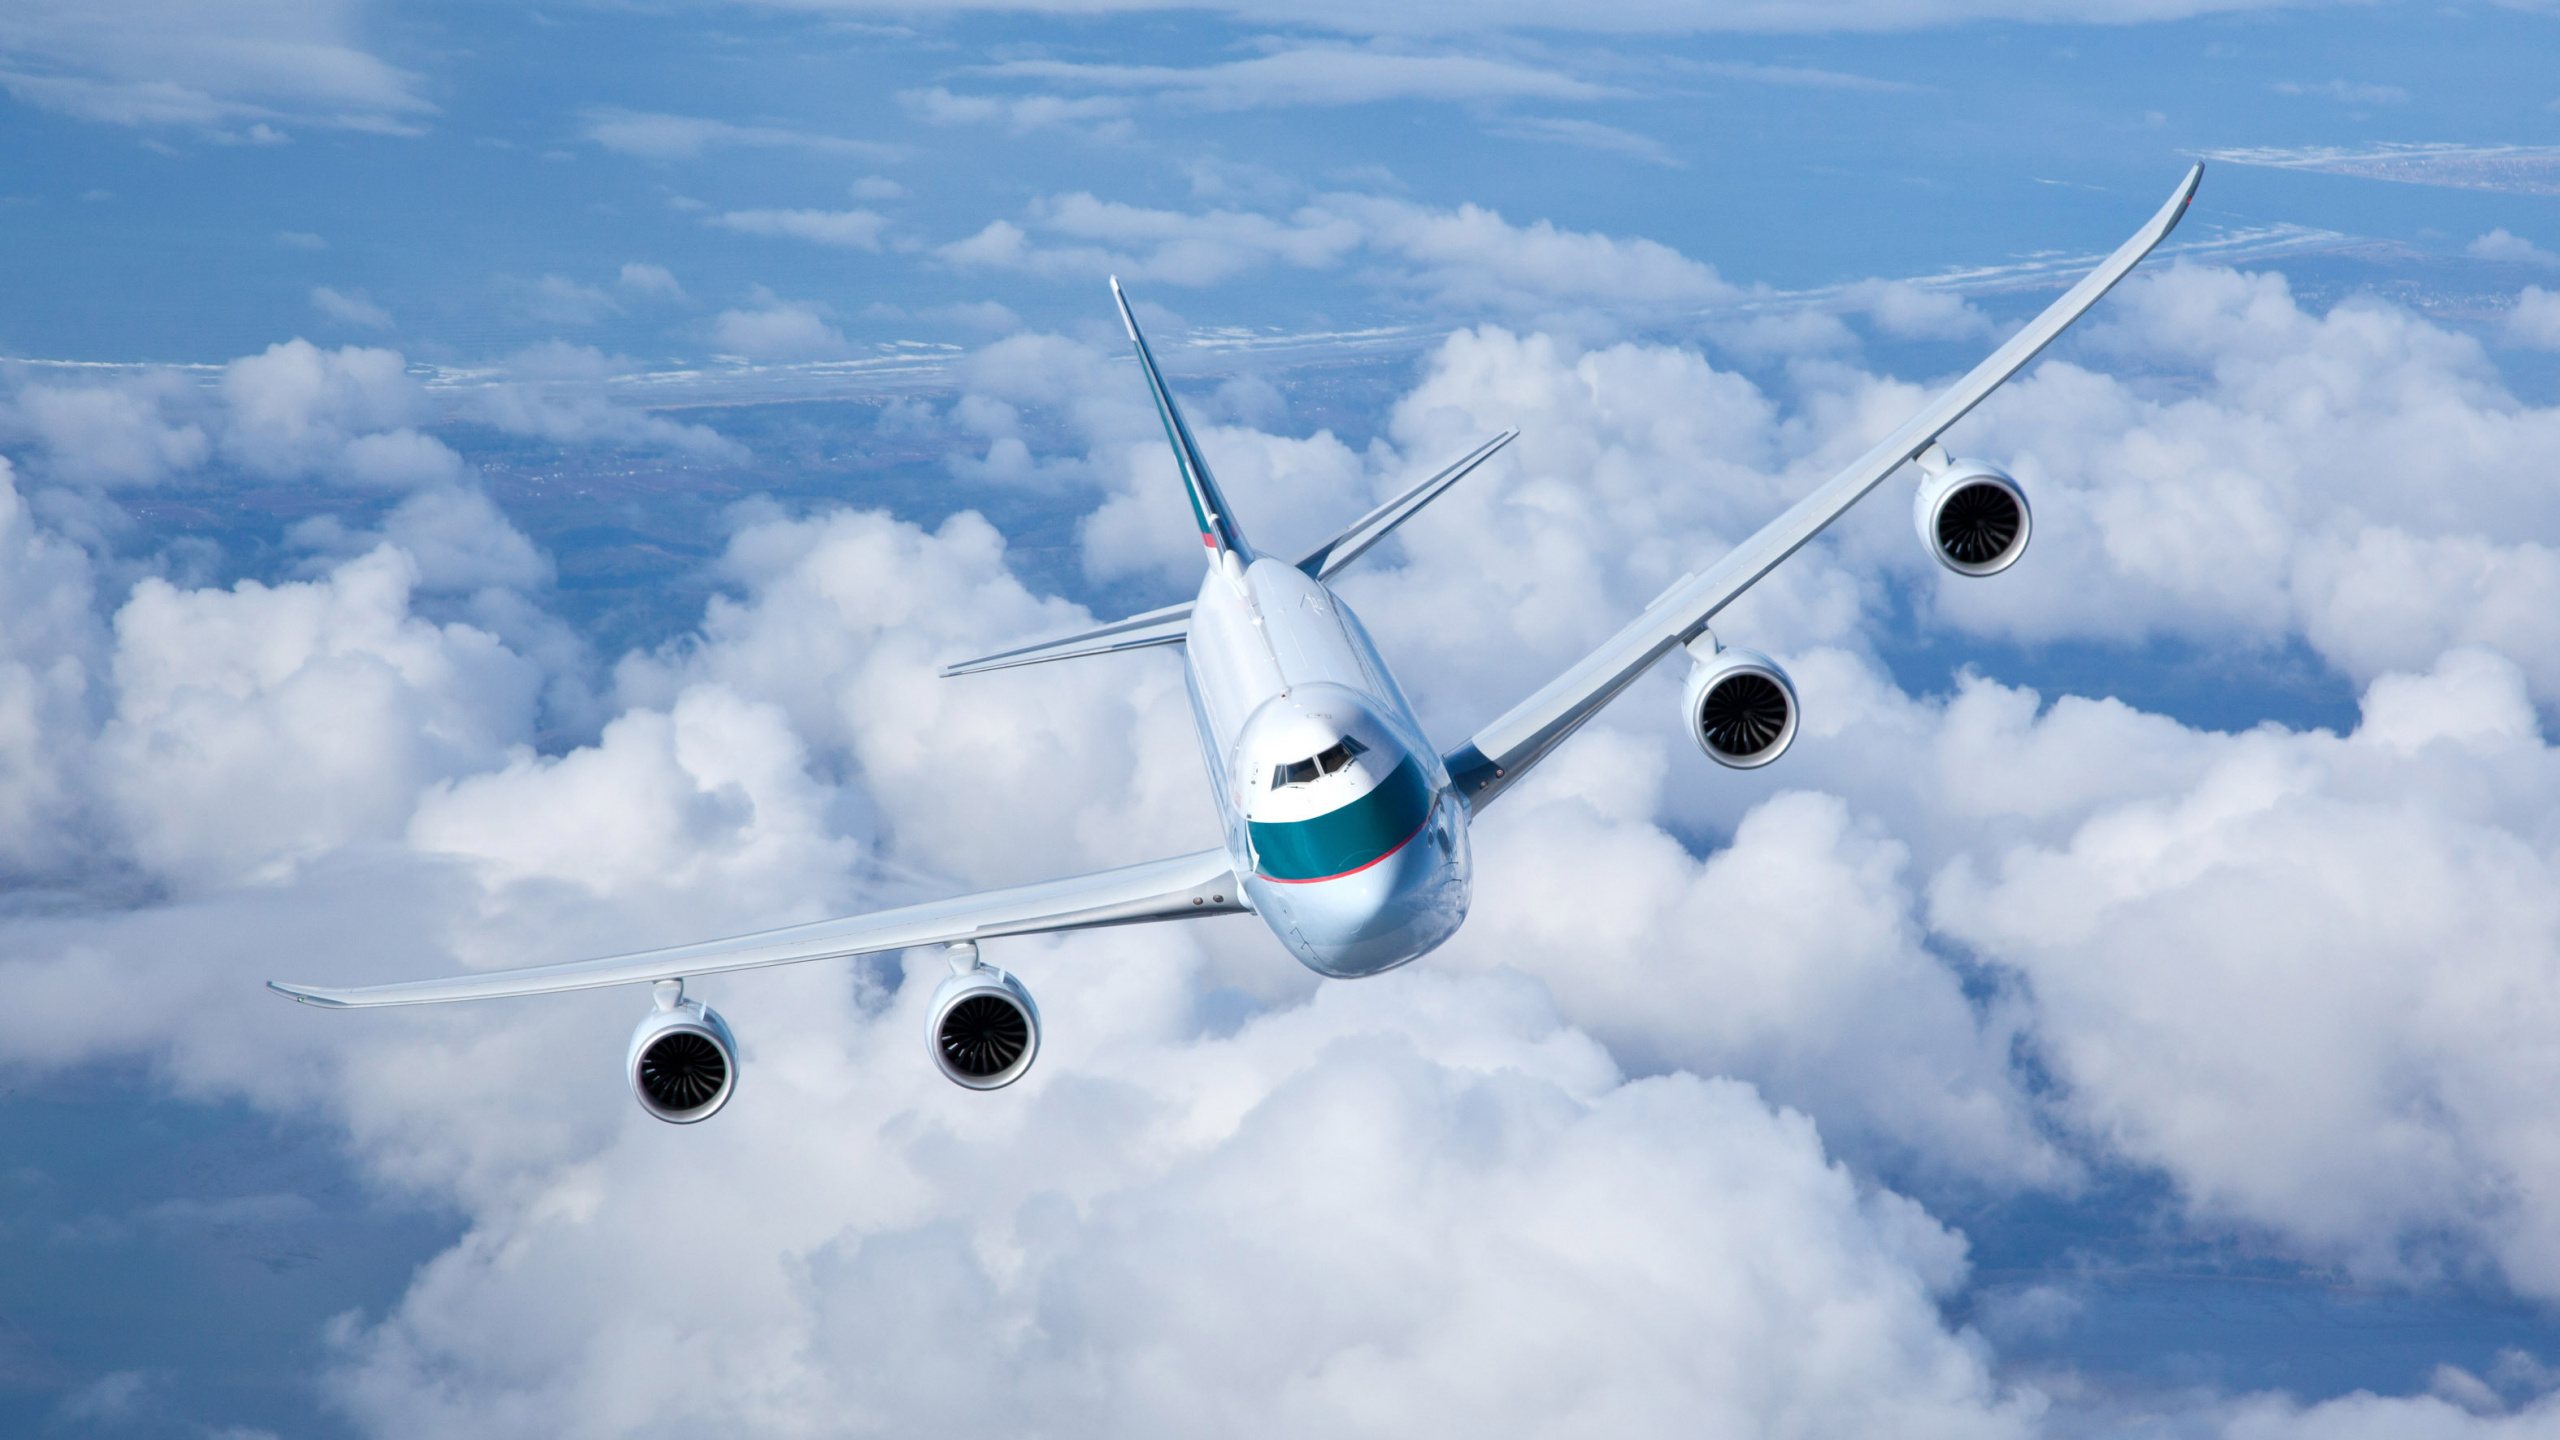 波音747, 航空公司, 客机, 空中旅行, 航空 壁纸 2560x1440 允许